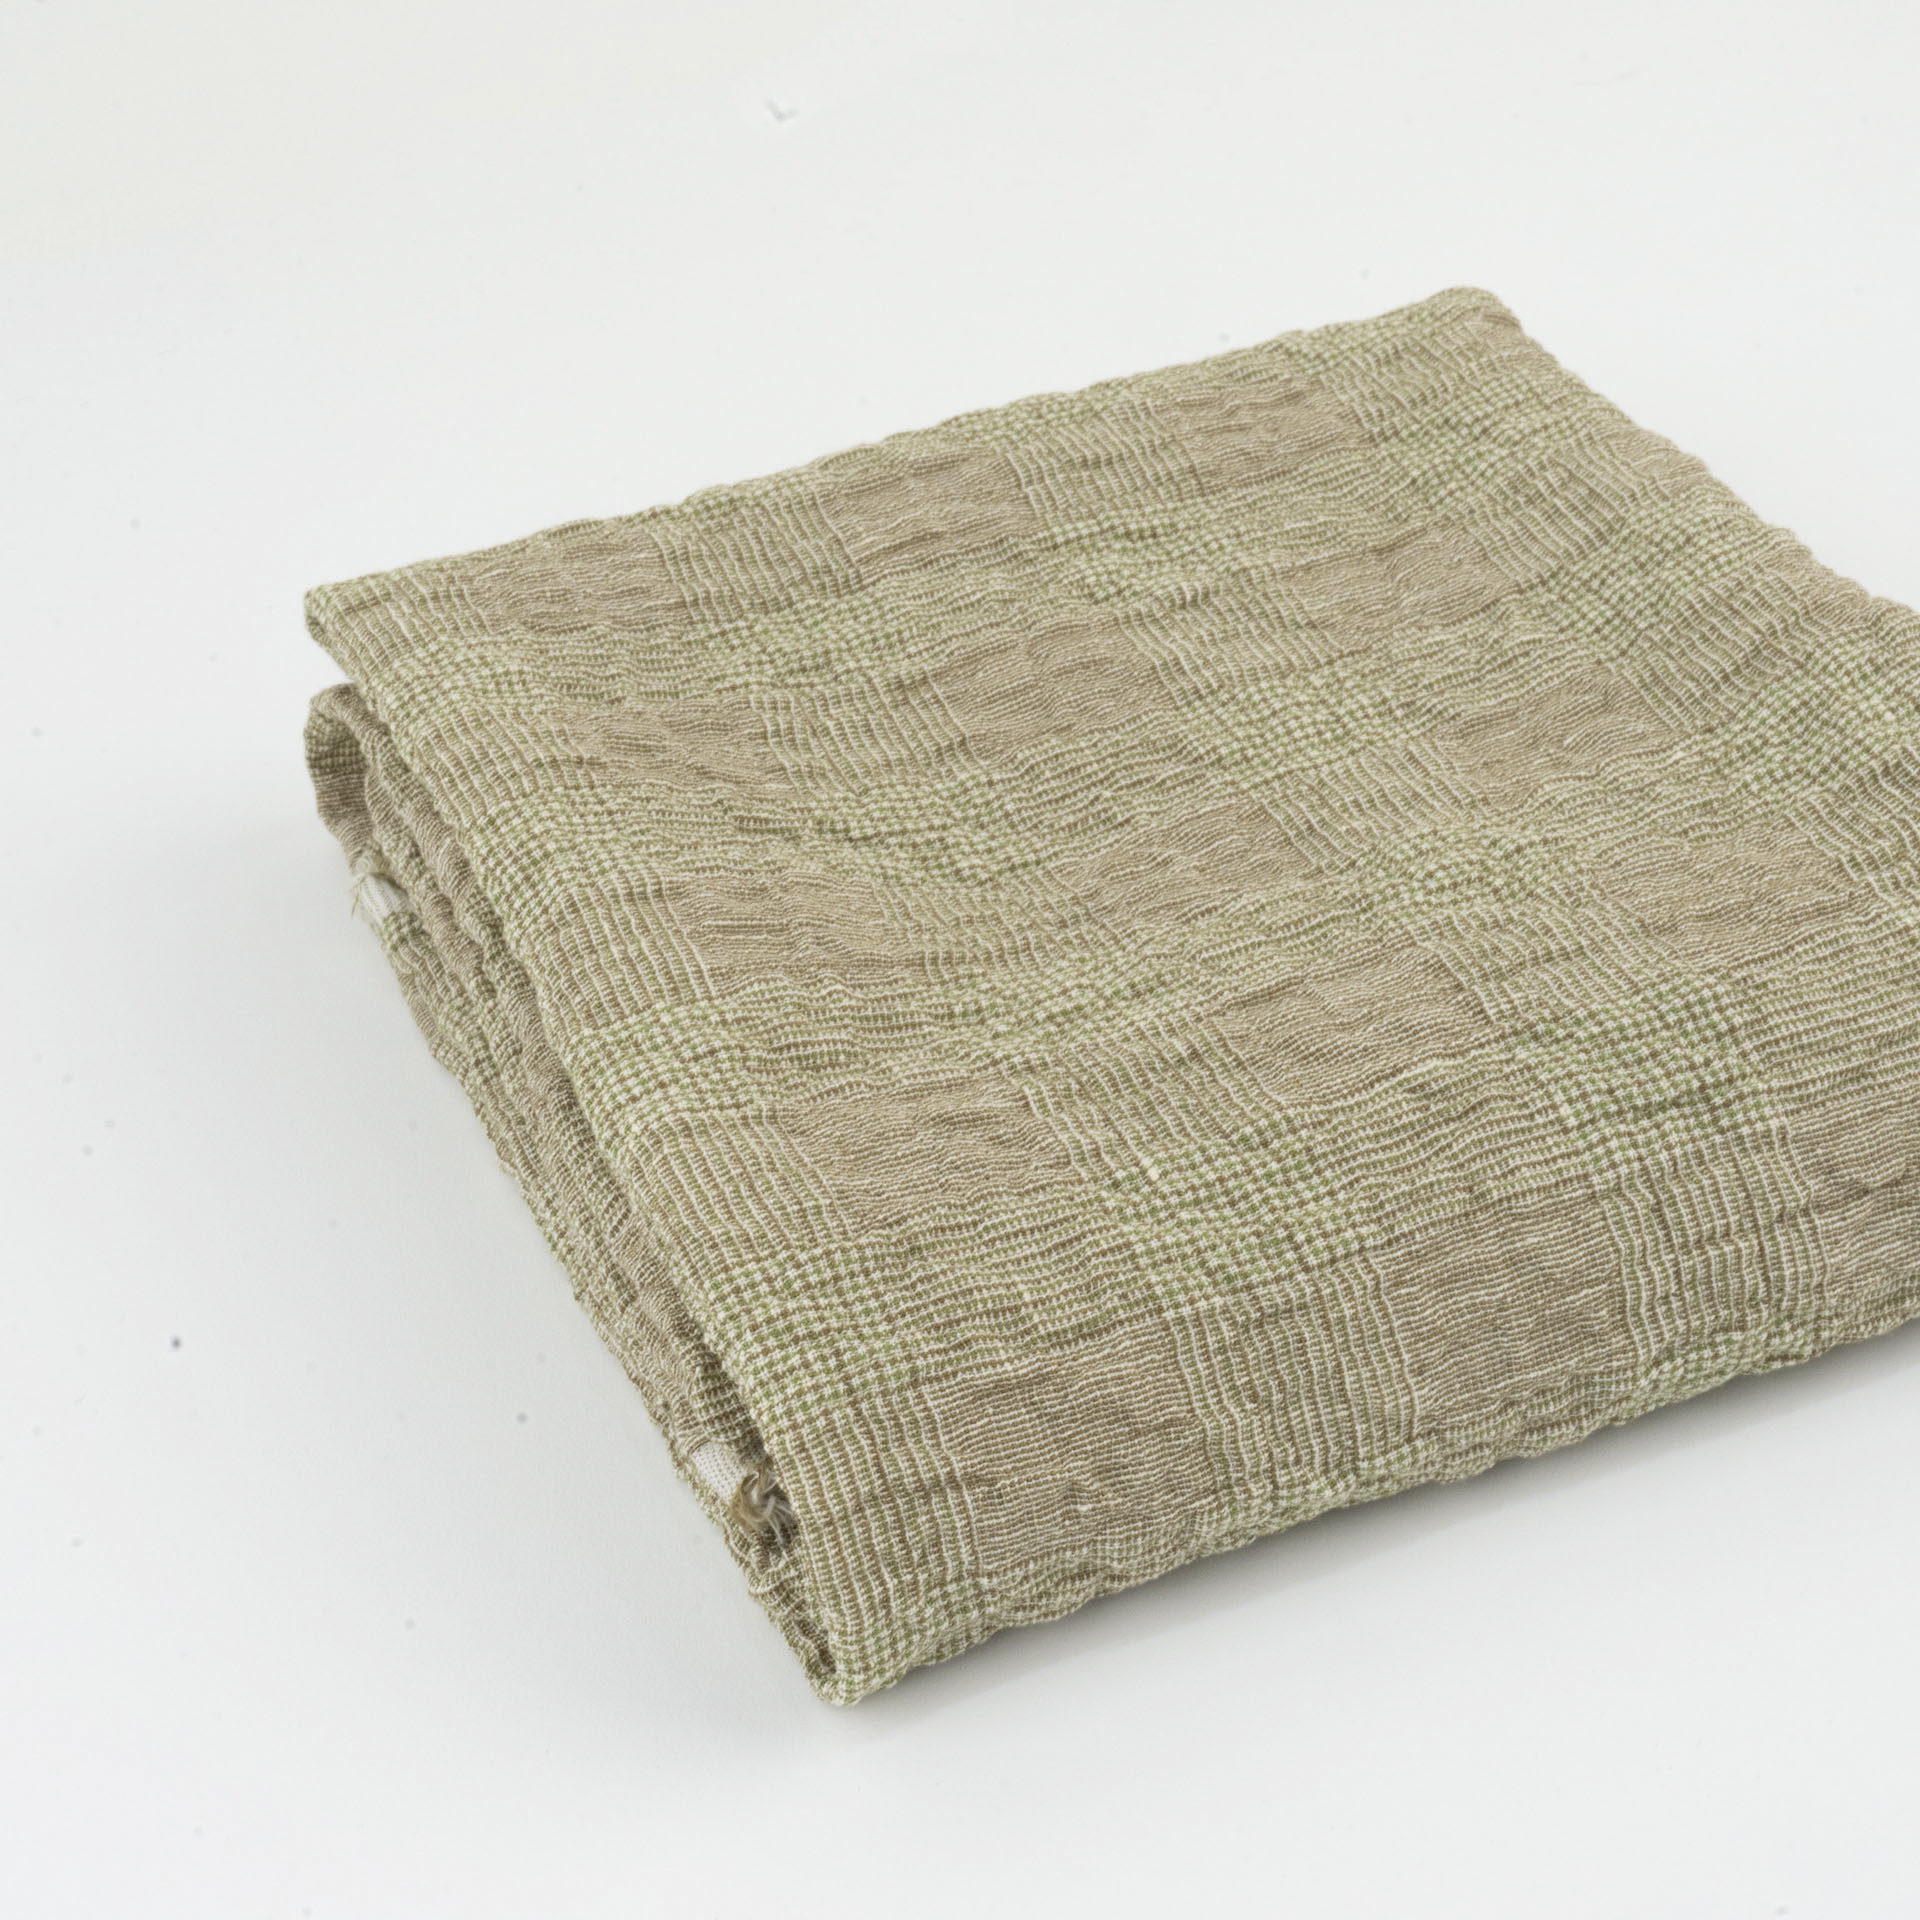 Stretch linen fabric B 1/2 yard